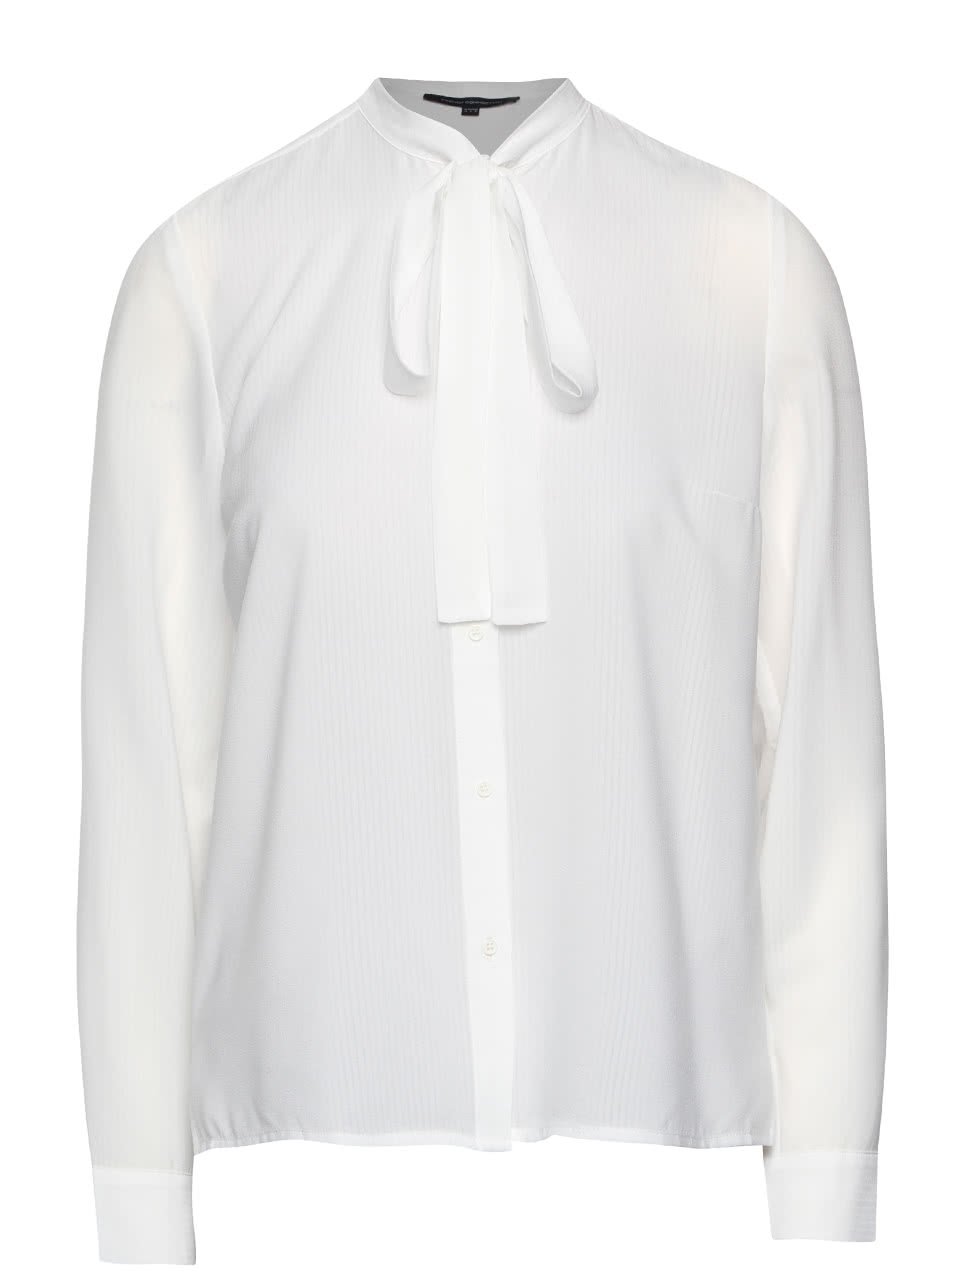 Bílá košile s vázankou French Connection Pippa